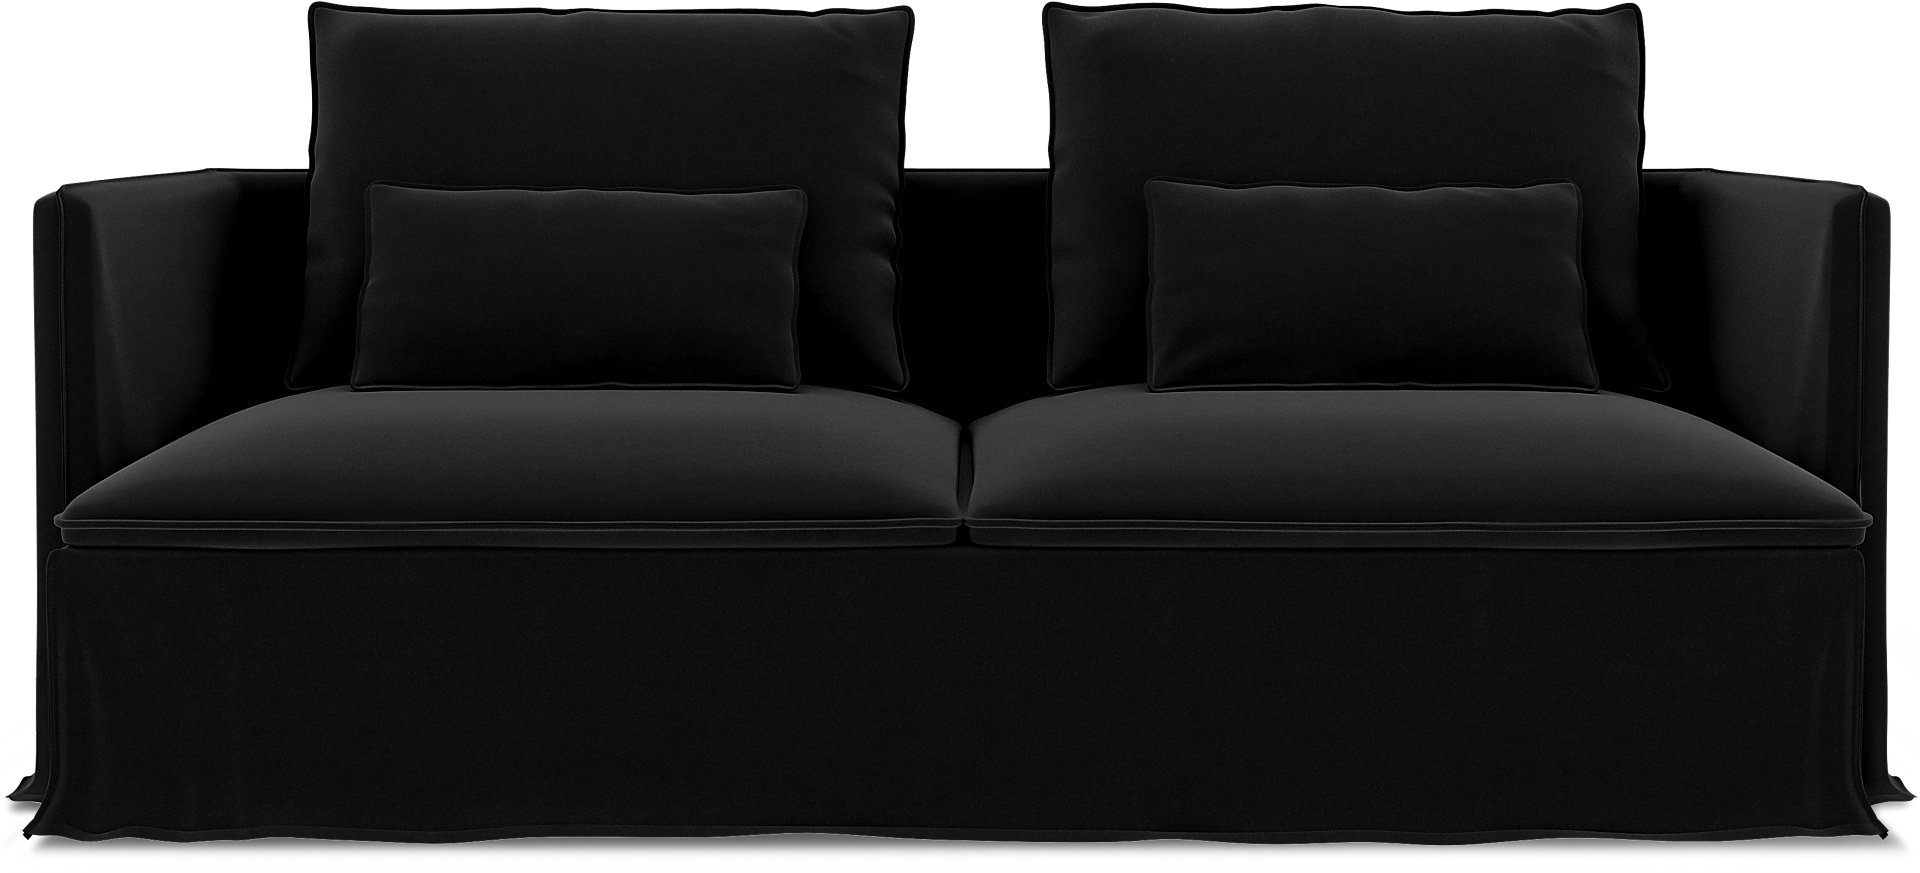 IKEA - Soderhamn 3 Seater Sofa Cover, Black, Velvet - Bemz